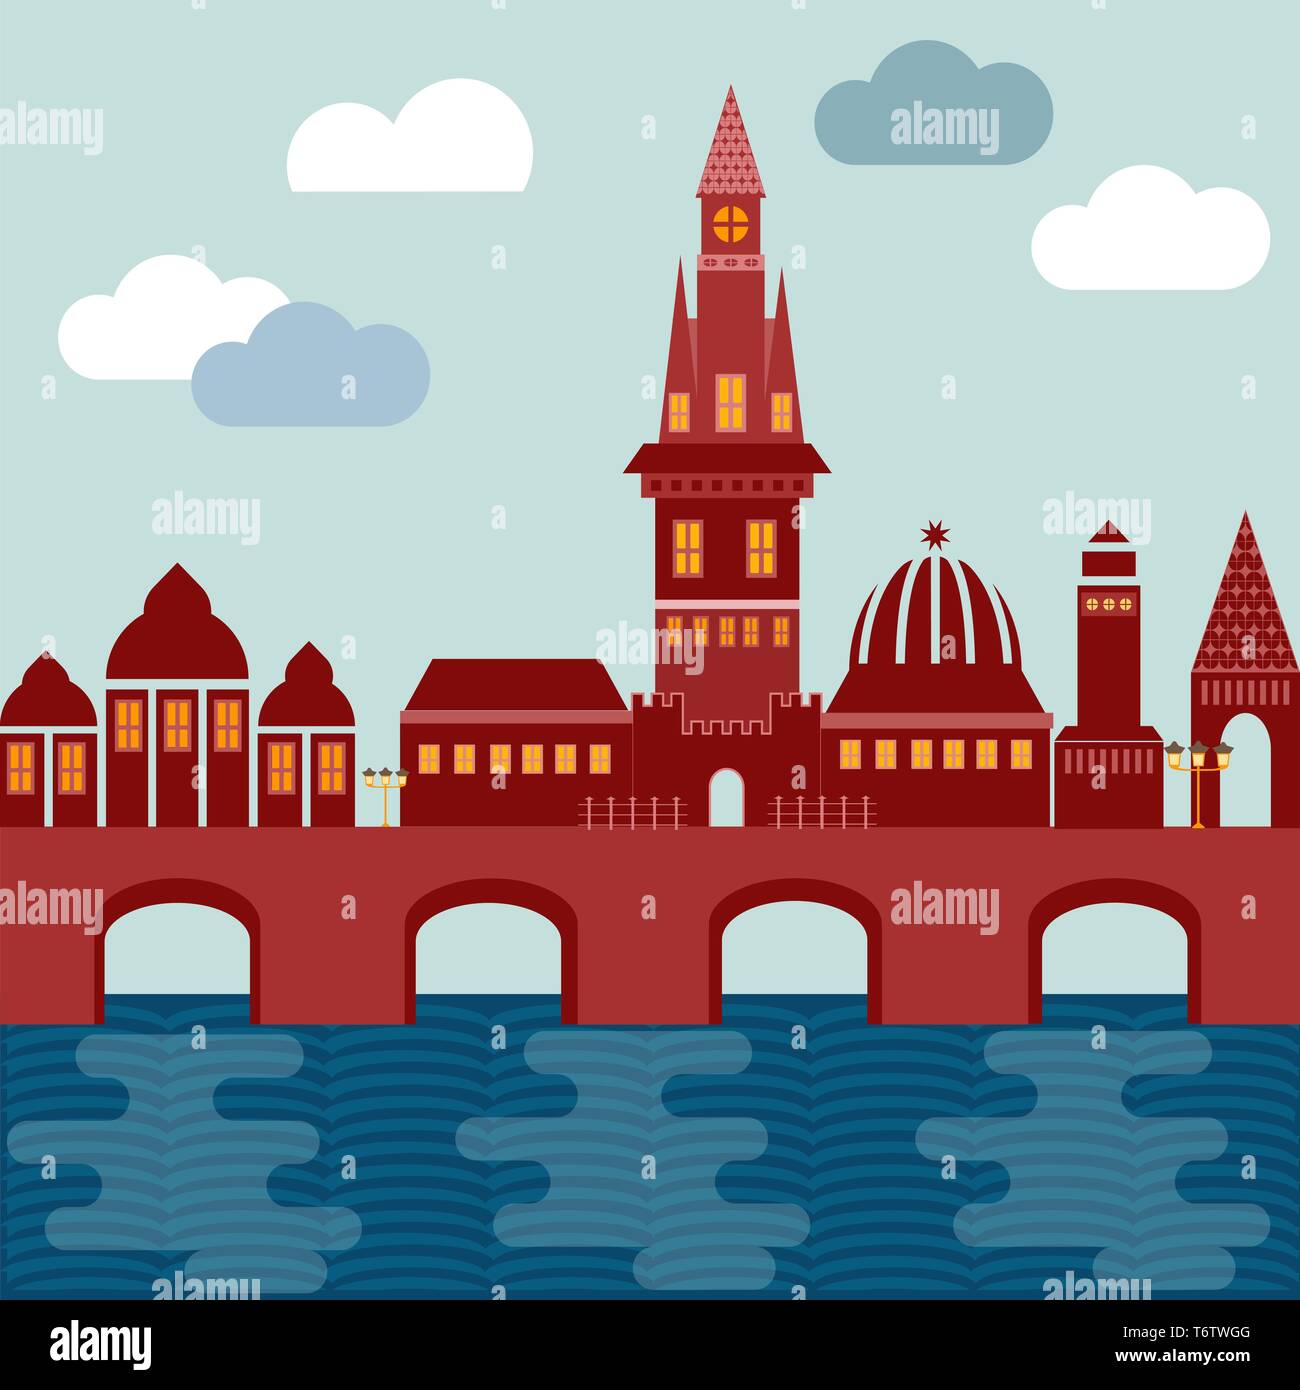 Vektor Stadt europäische an der Küste mit Brücke Häuser Turm von Kirche und Schloss von roter Farbe auf dem Hintergrund der Himmel mit Wolken Stock Vektor